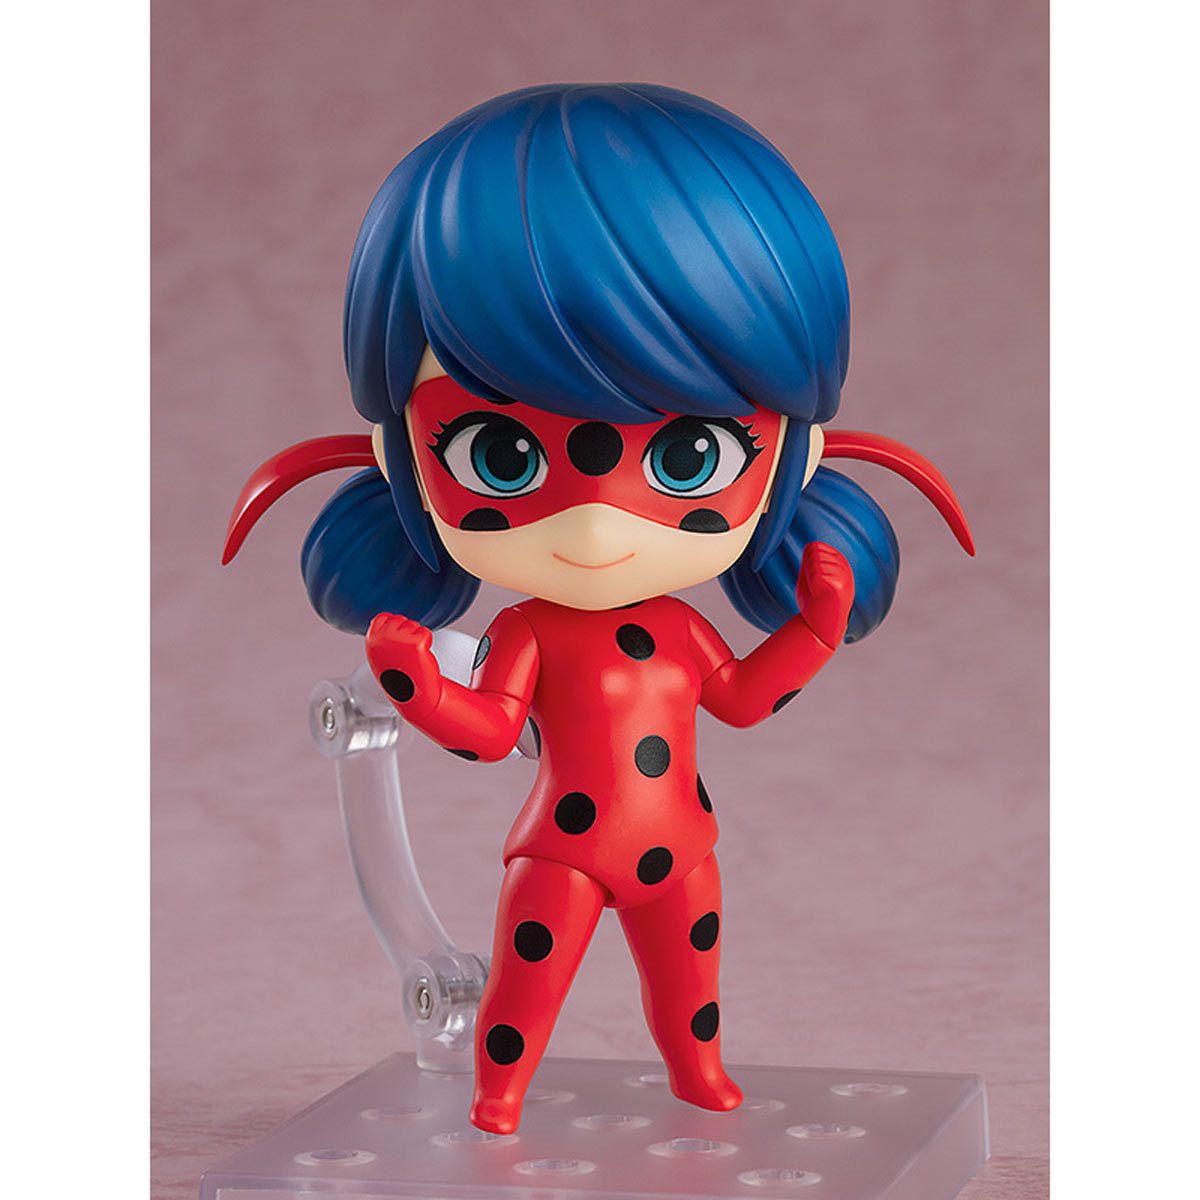 Miraculous: Ladybug & Cat Noir Chibi Toy Figure Blind Box (Official Li –  Unique Fun Gift